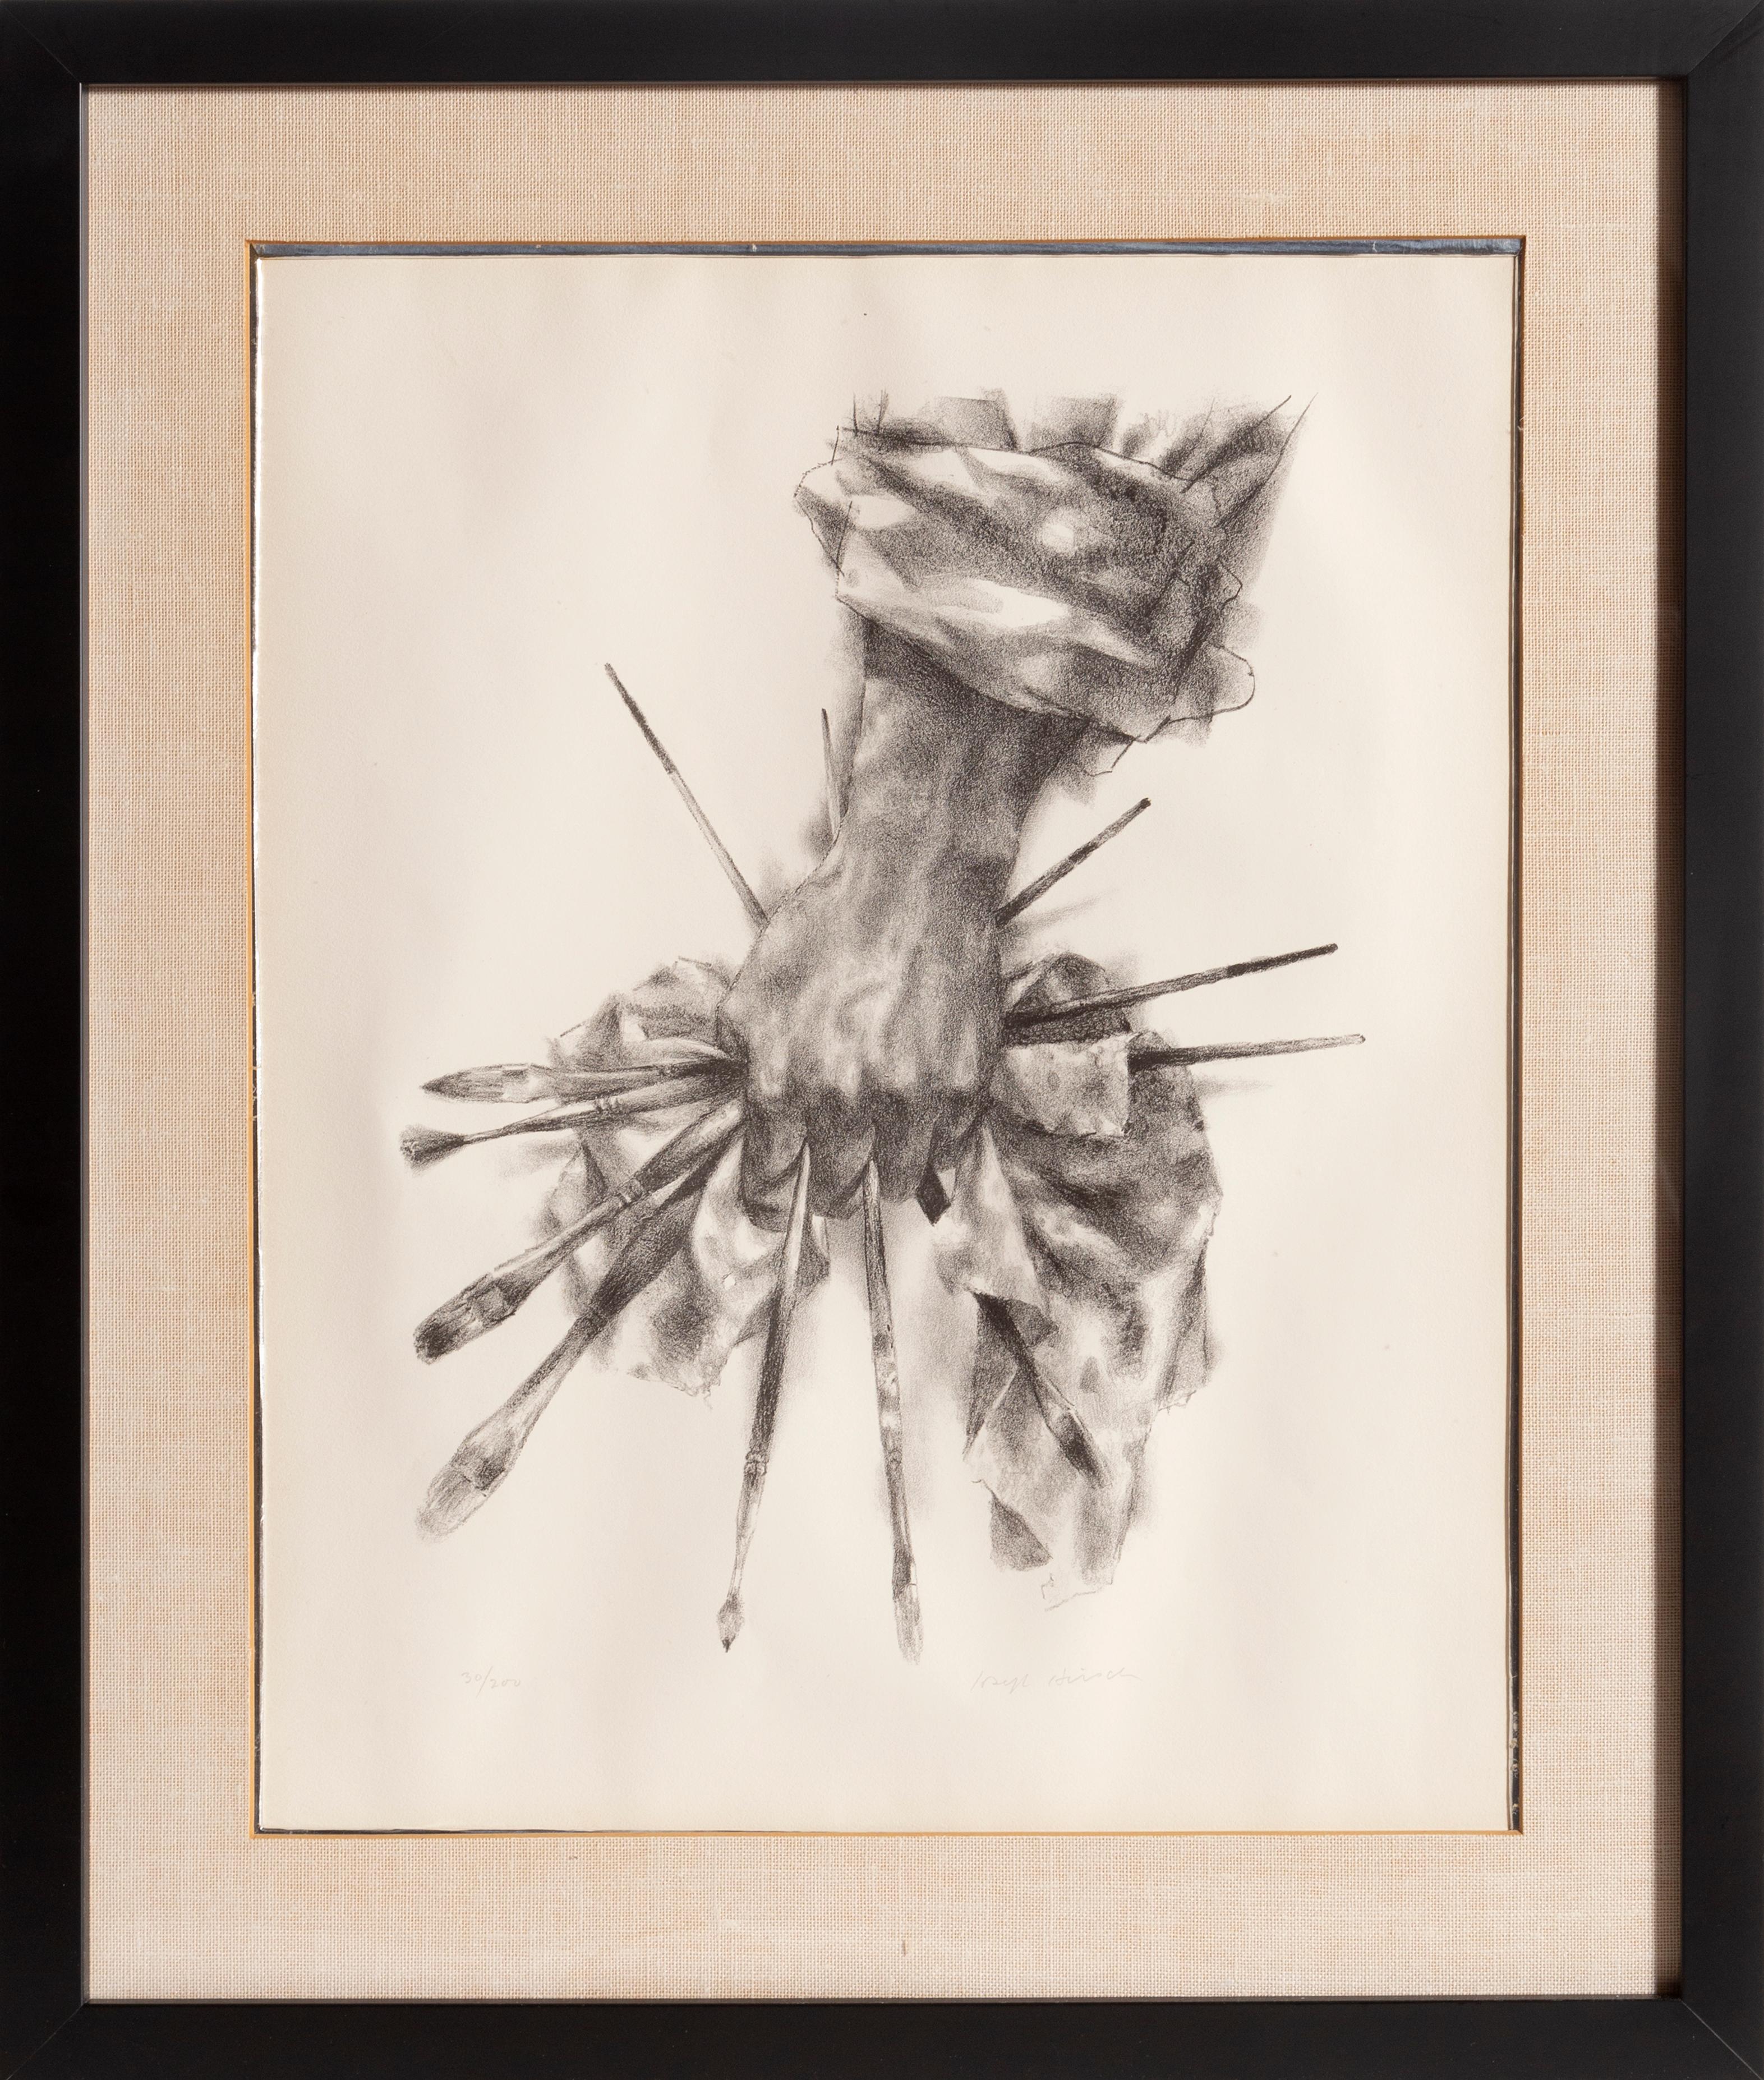 Künstler: Joseph Hirsch, Amerikaner (1901 - 1981)
Titel: Die Hand des Künstlers (Cole 51)
Jahr: 1966
Medium: Lithographie, mit Bleistift signiert und nummeriert
Auflage: 30/200
Bildgröße: 19 x 15 Zoll
Rahmengröße: 25,5 x 21,5 Zoll